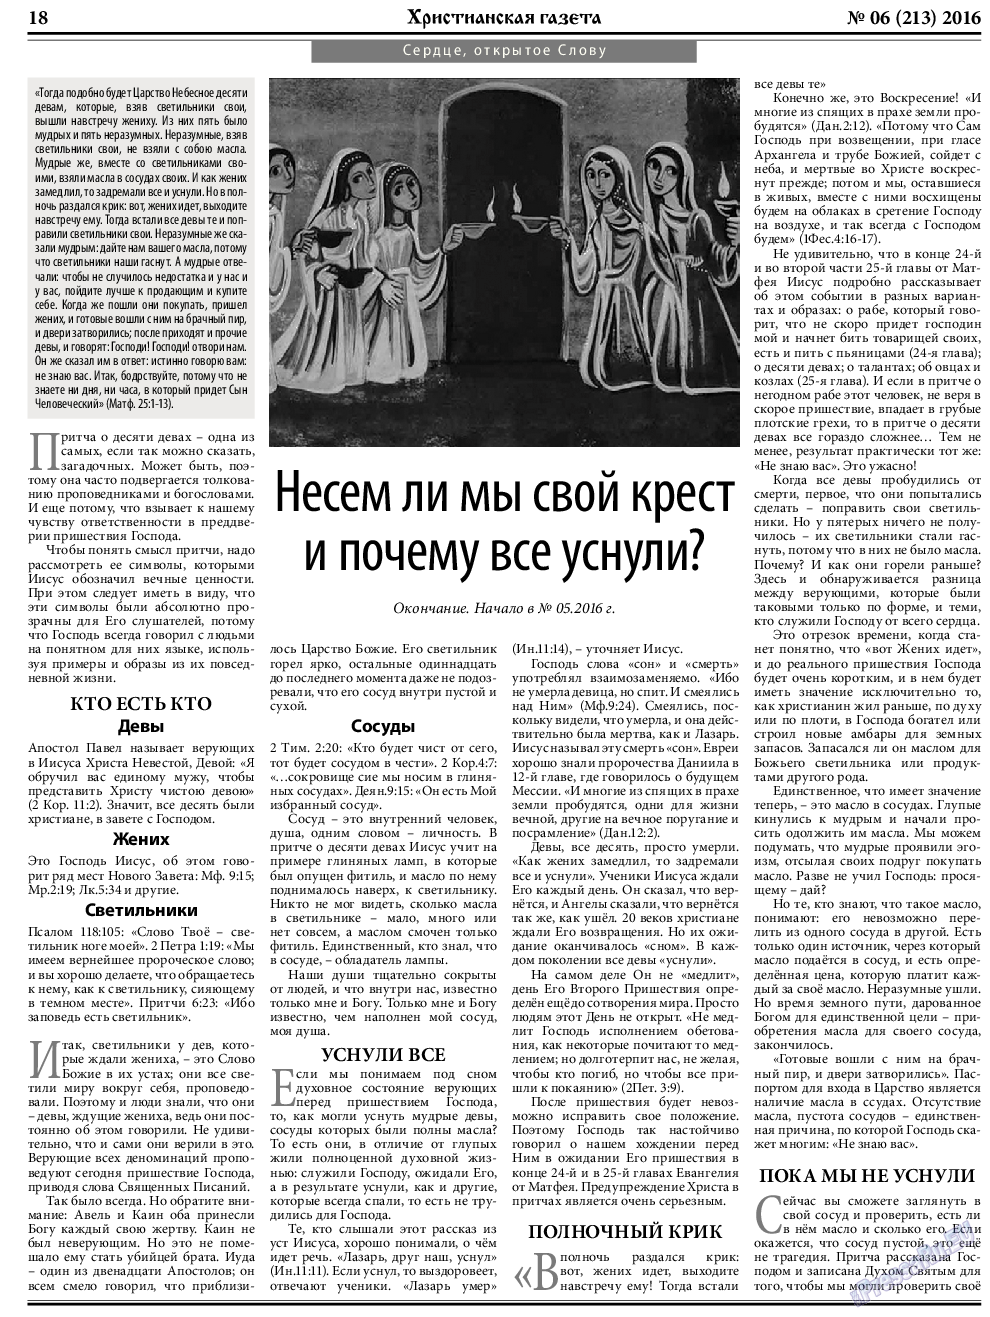 Христианская газета, газета. 2016 №6 стр.26